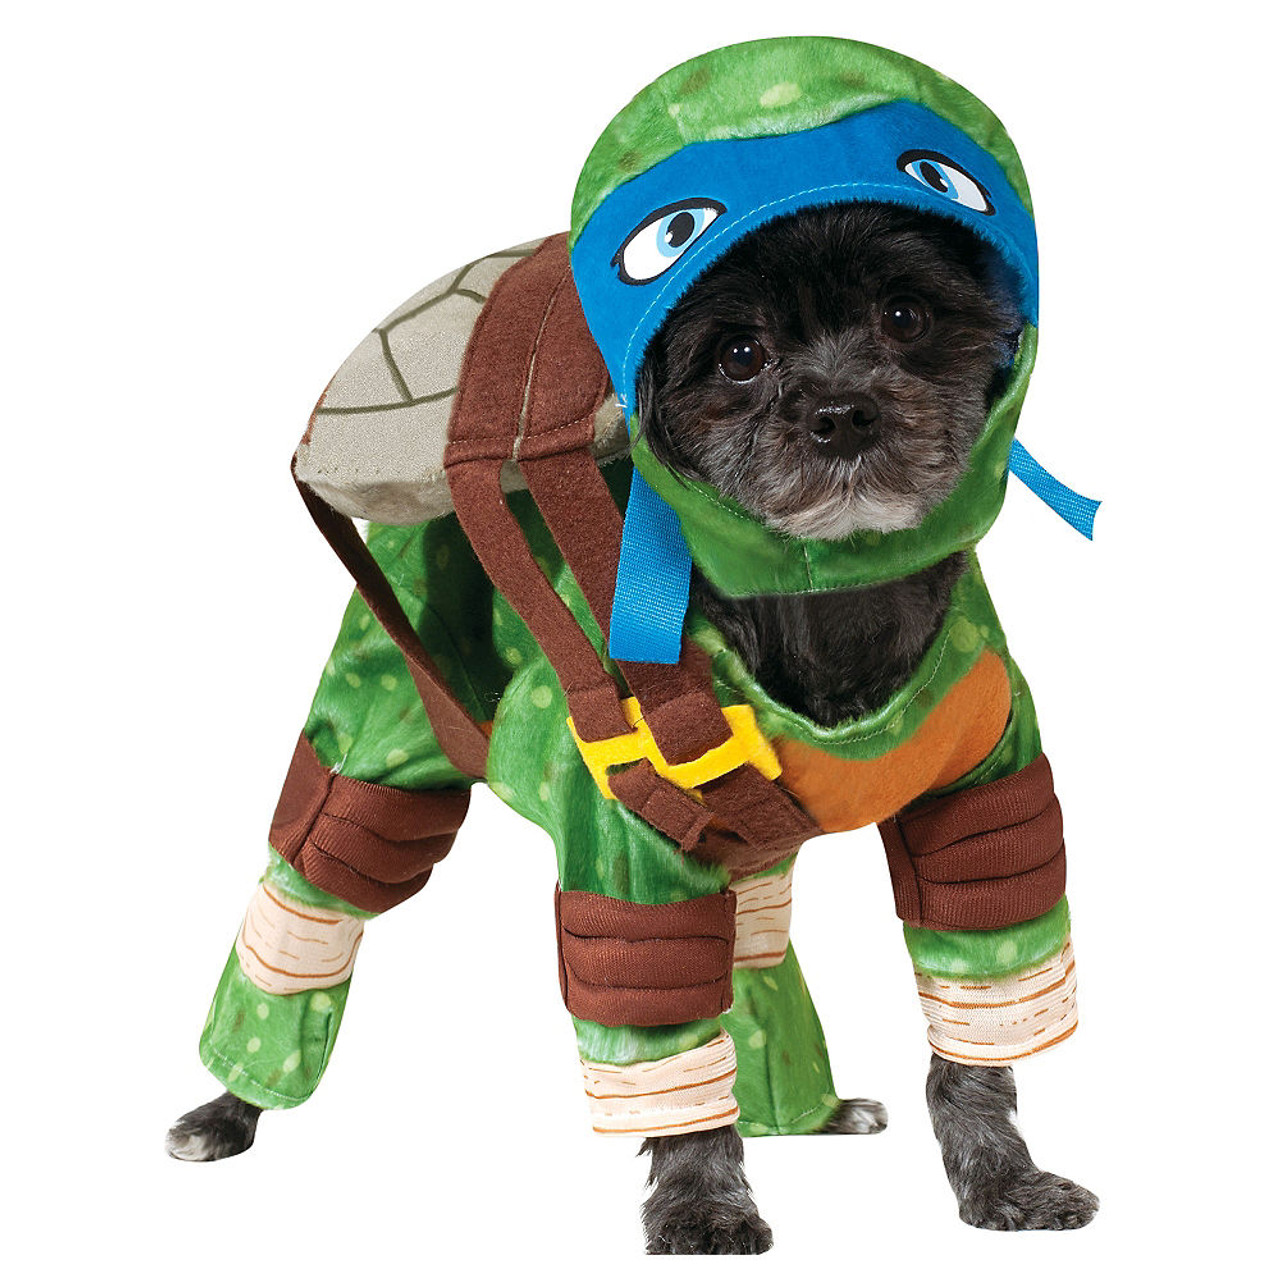 TMNT Teenage Mutant Ninja Turtles Costume